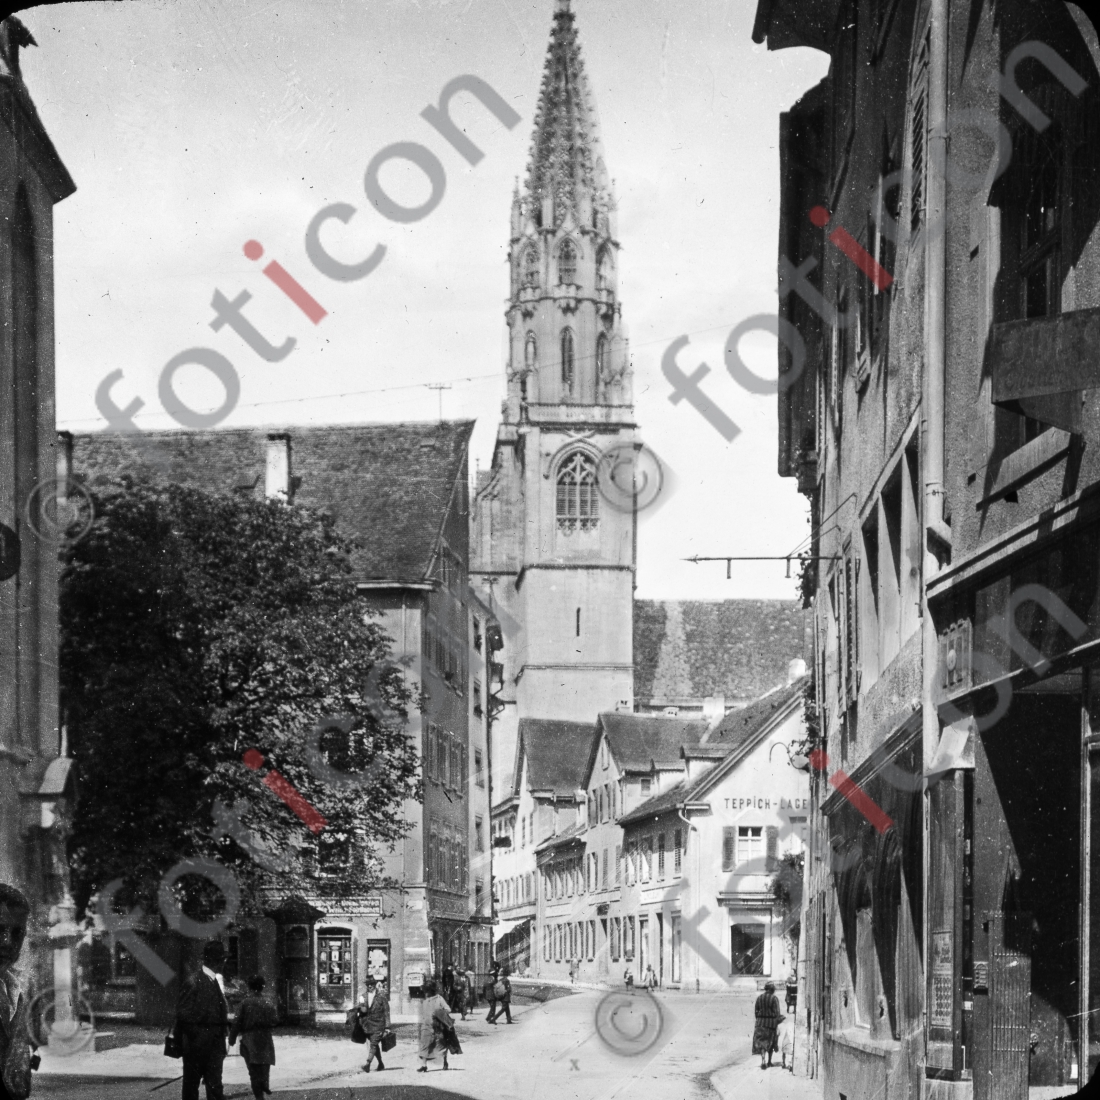 Konstanz | Constance - Foto foticon-simon-127-019-sw.jpg | foticon.de - Bilddatenbank für Motive aus Geschichte und Kultur